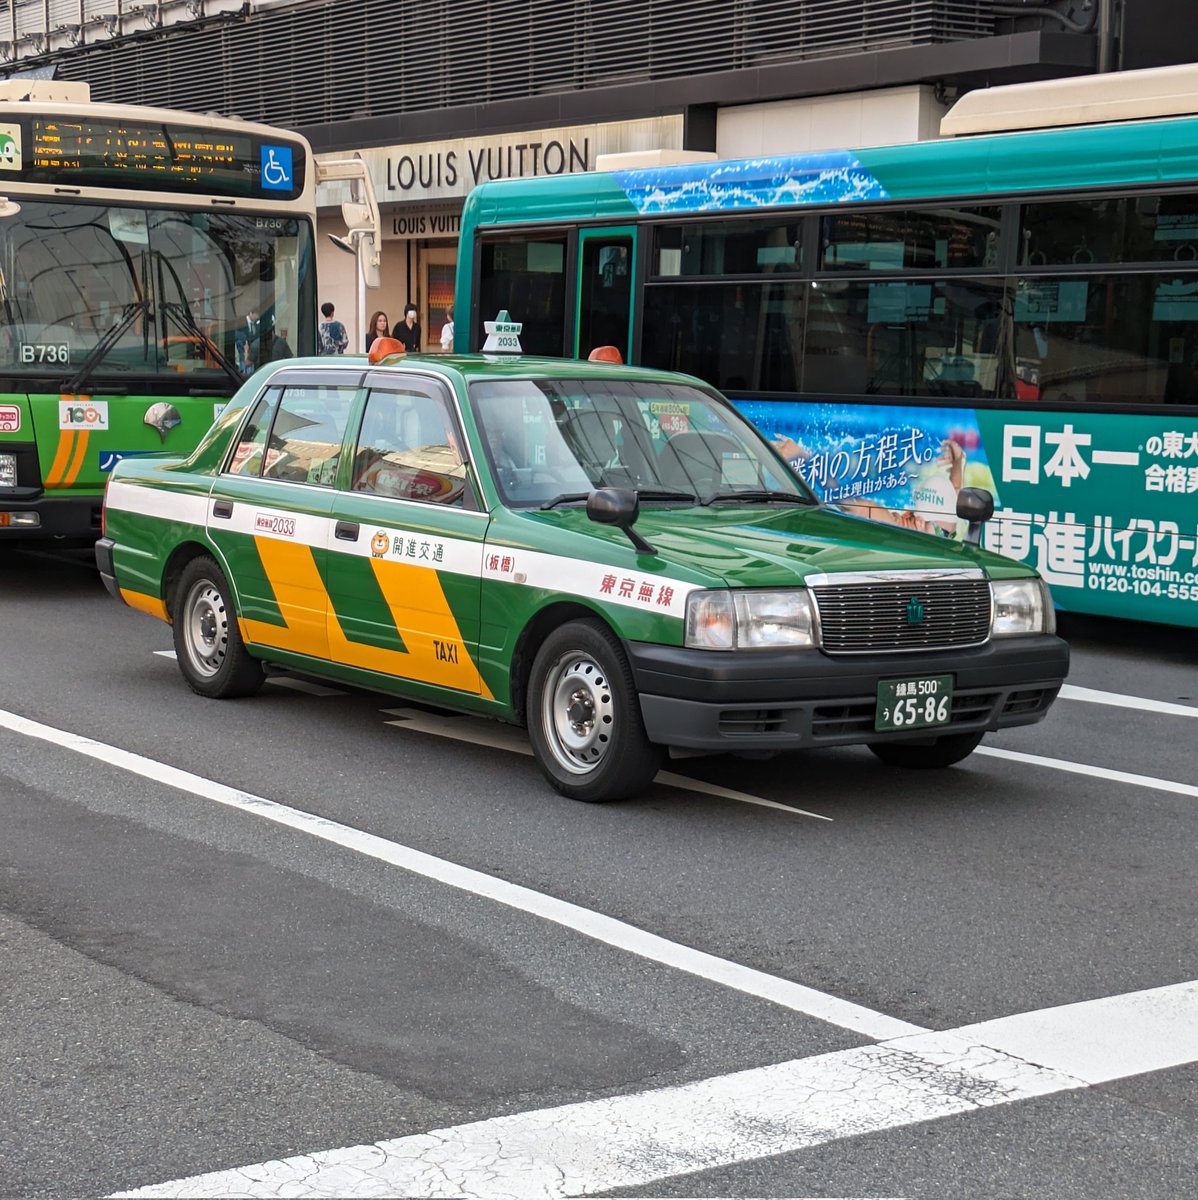 バッタ色の東京無線なにかと初めて撮影した。
東京に行けば当たり前に見れると思ってたこの色、もう当たり前ではなくなってると思うと寂しいばかり。
#東京無線
#タクシー
#１日1タク